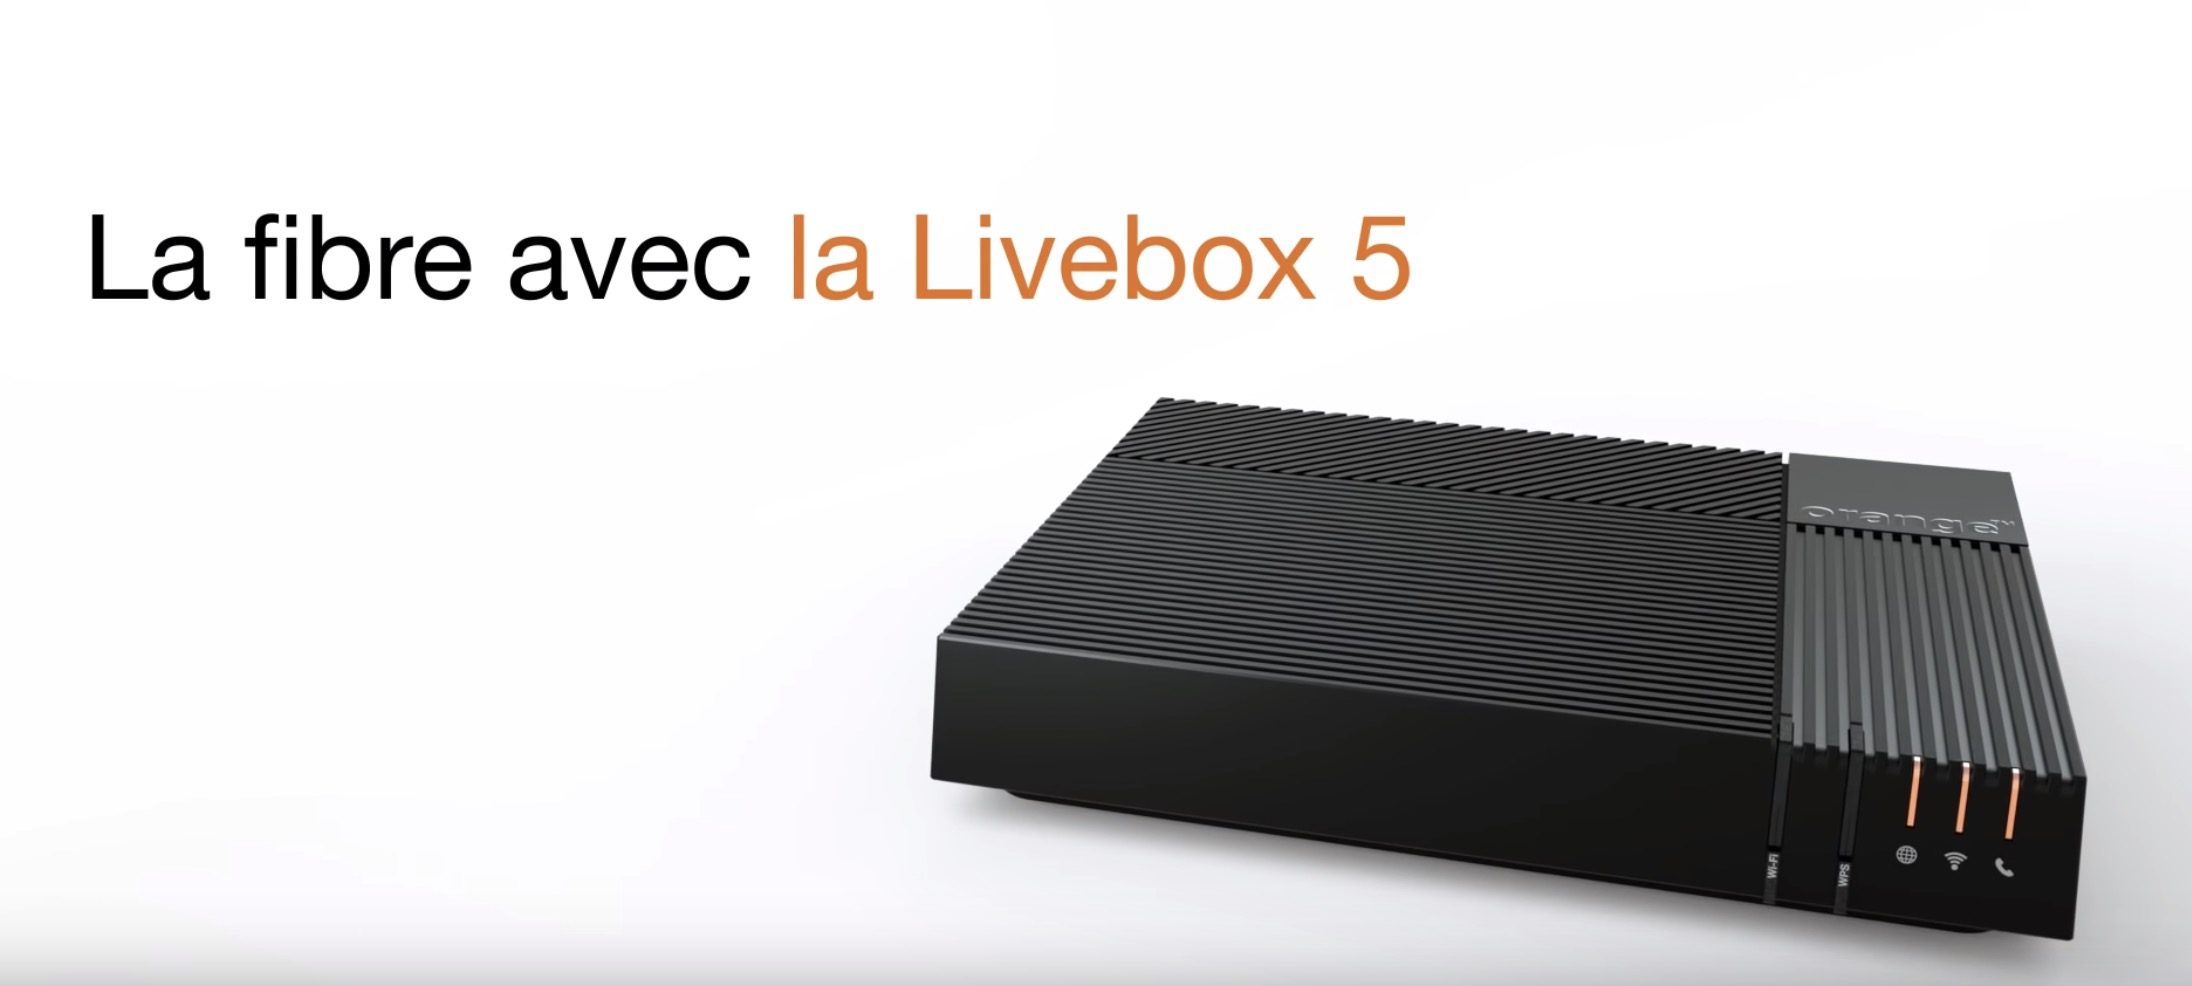 La livebox 5 dOrange